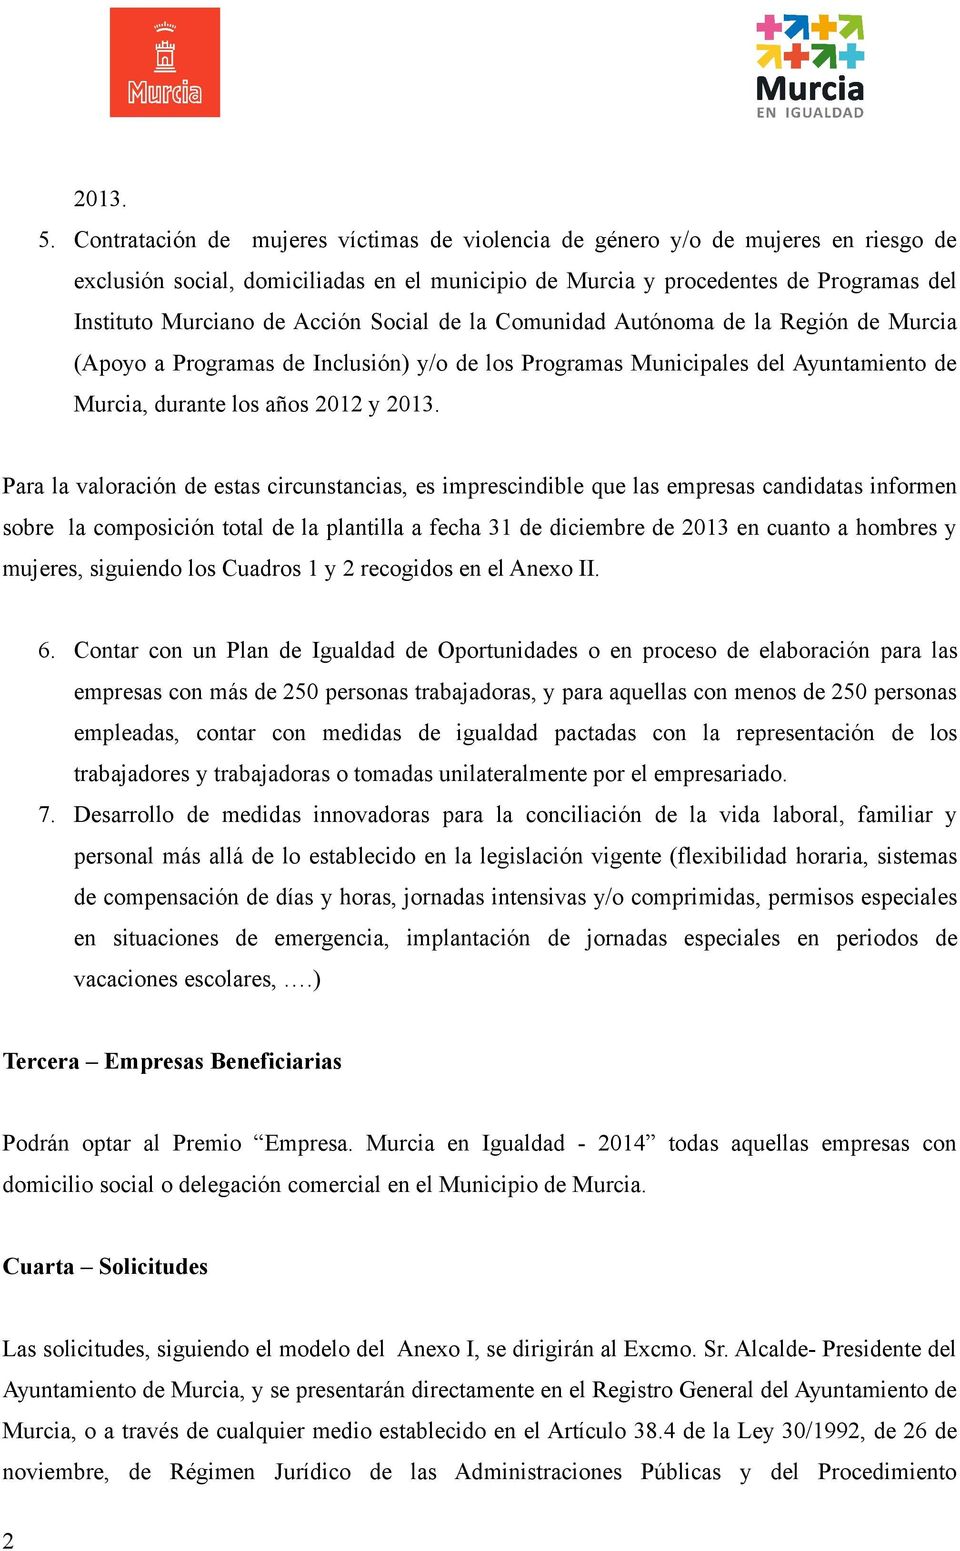 Acción Social de la Comunidad Autónoma de la Región de Murcia (Apoyo a Programas de Inclusión) y/o de los Programas Municipales del Ayuntamiento de Murcia, durante los años 2012 y 2013.